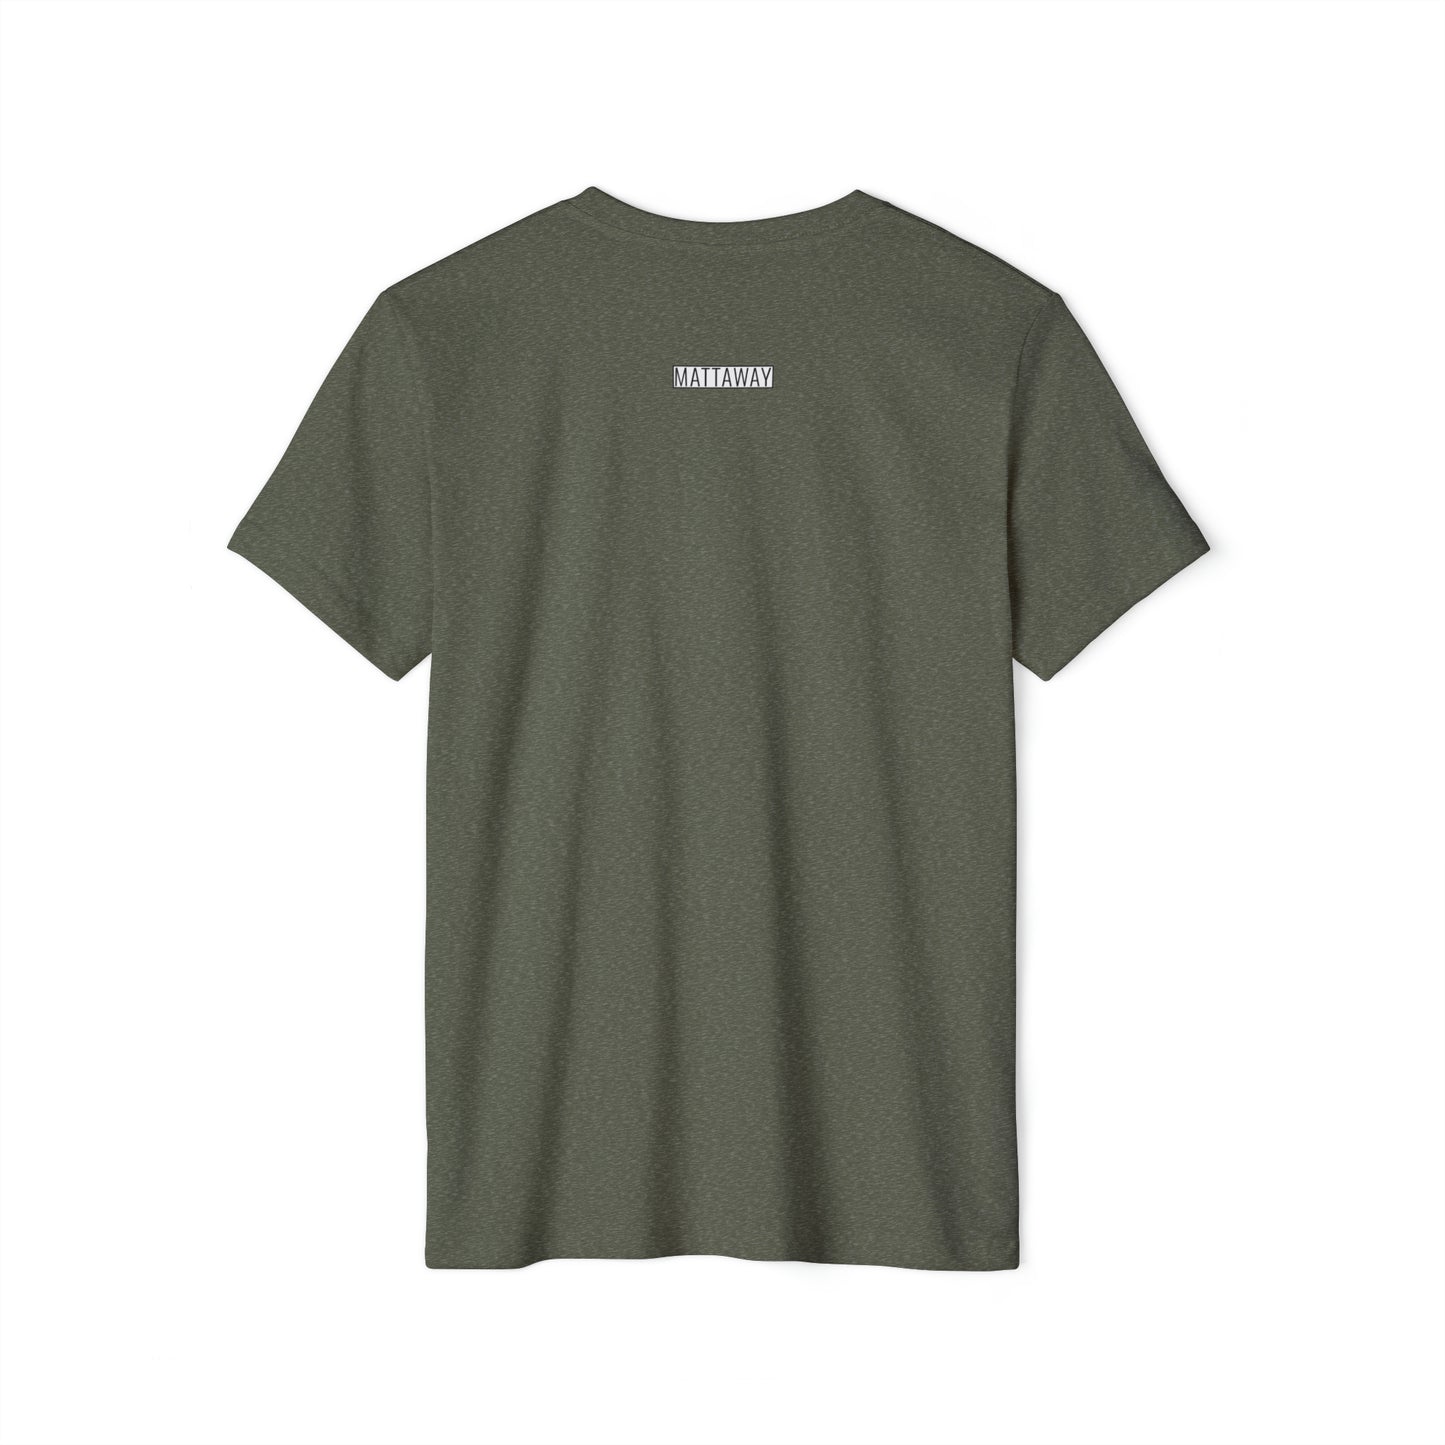 MINIMAL SHAPE 106 - Unisex Recycled Organic T-Shirt